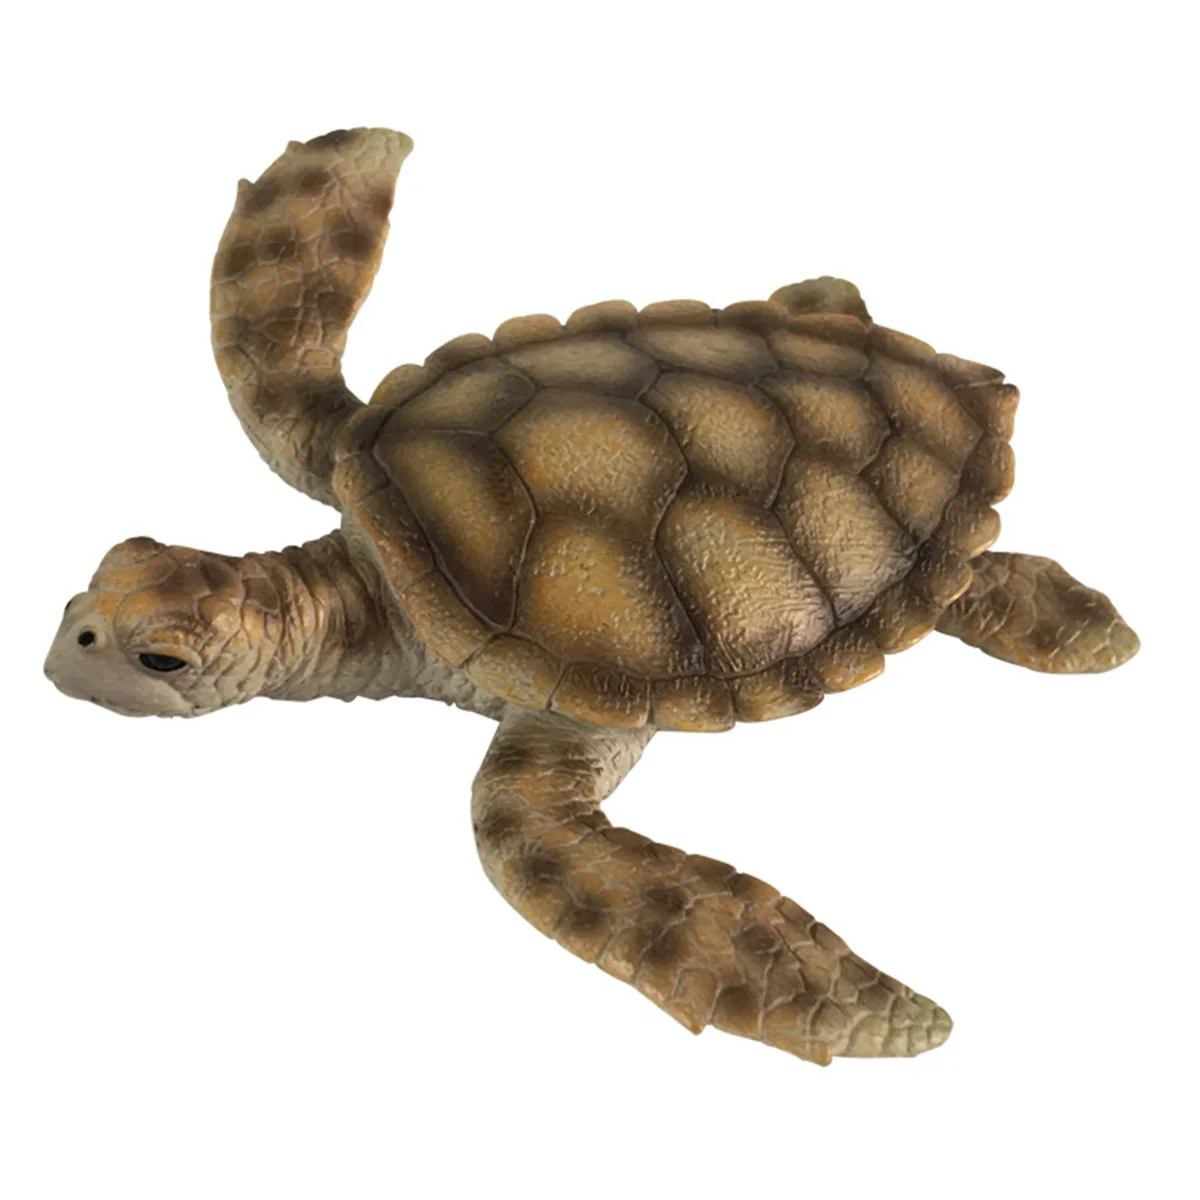 

Имитация черепахи, Реалистичная Веселая игрушка, модель животного для детей